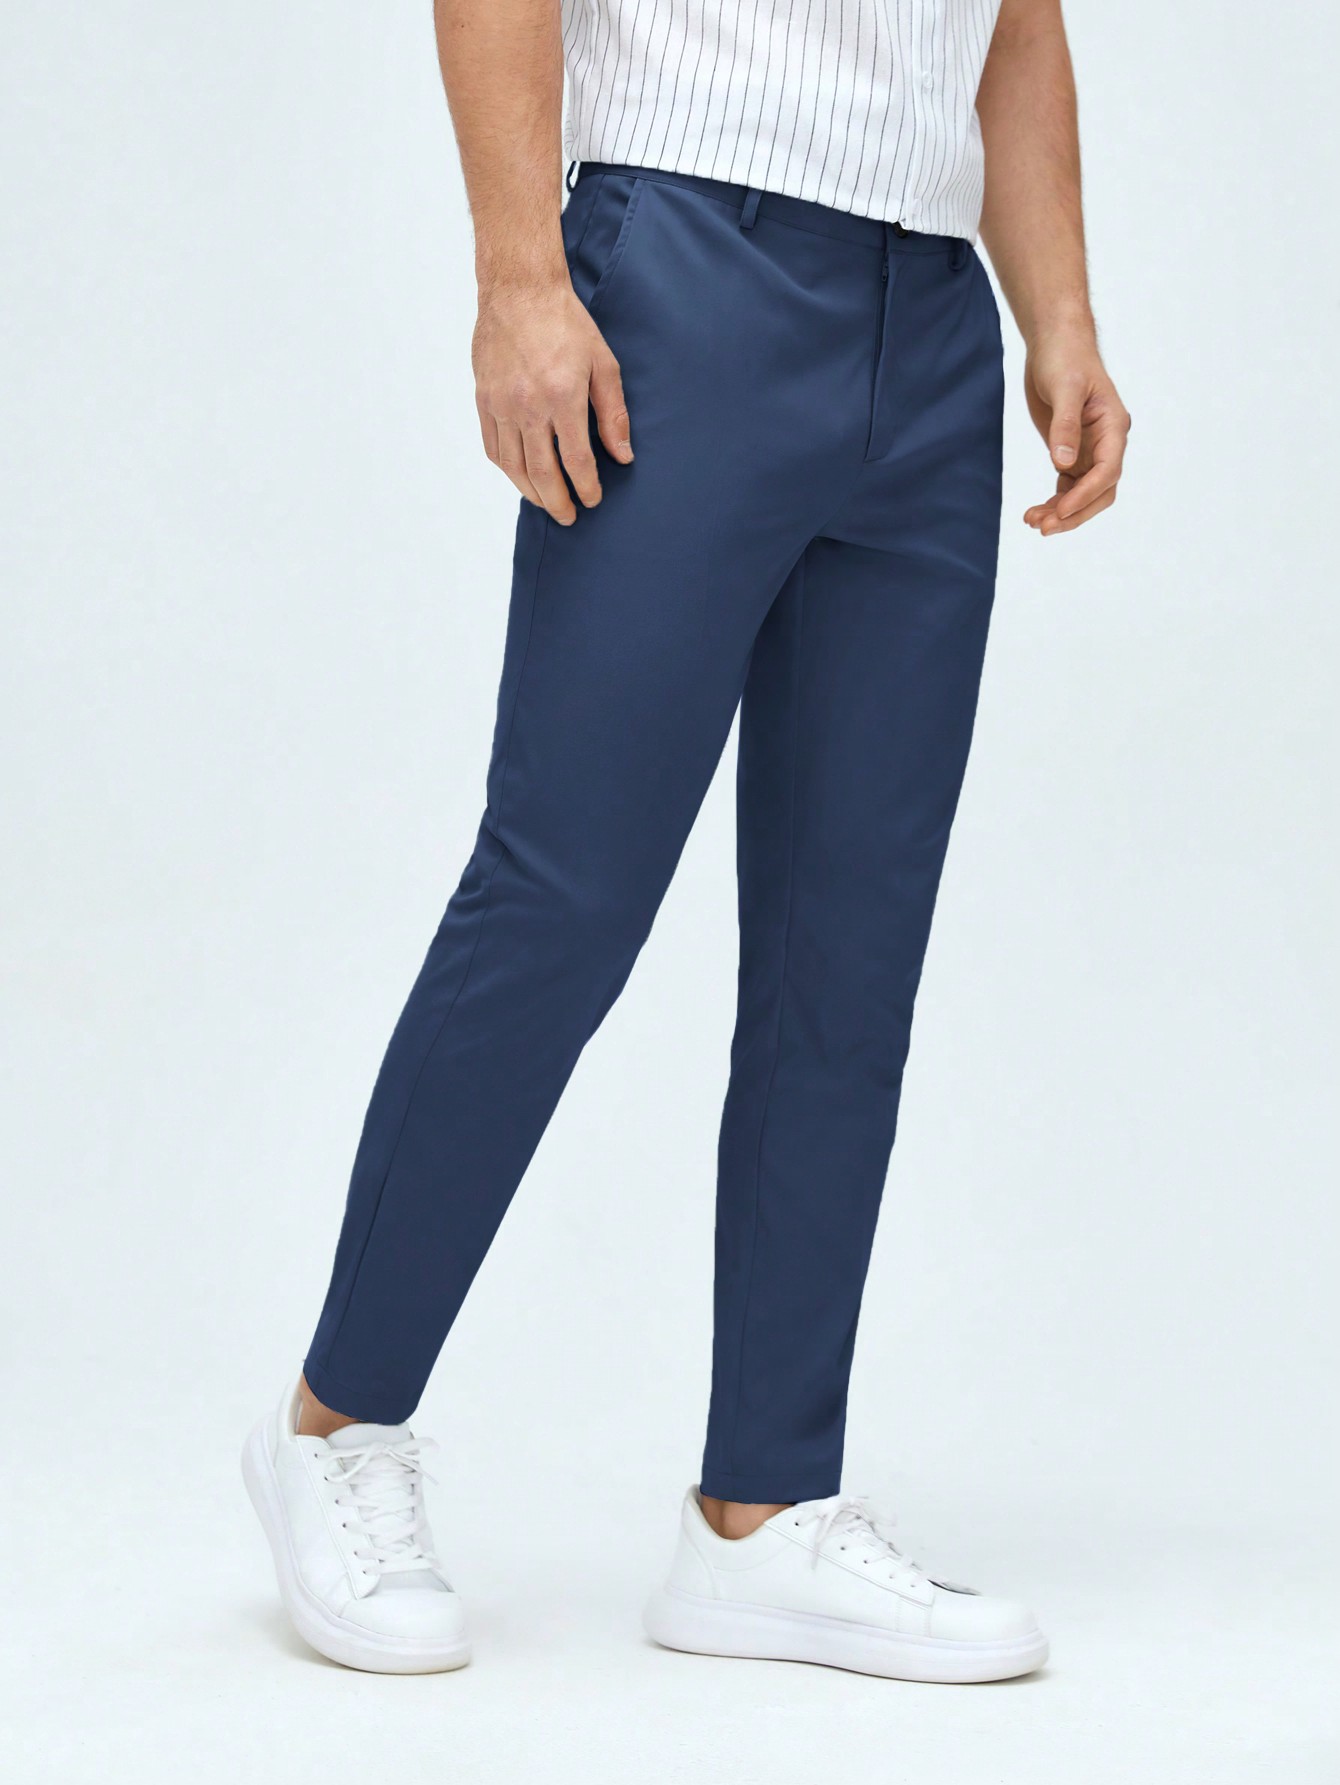 Мужские классические классические брюки из тканого материала с боковыми карманами Manfinity Mode, синий